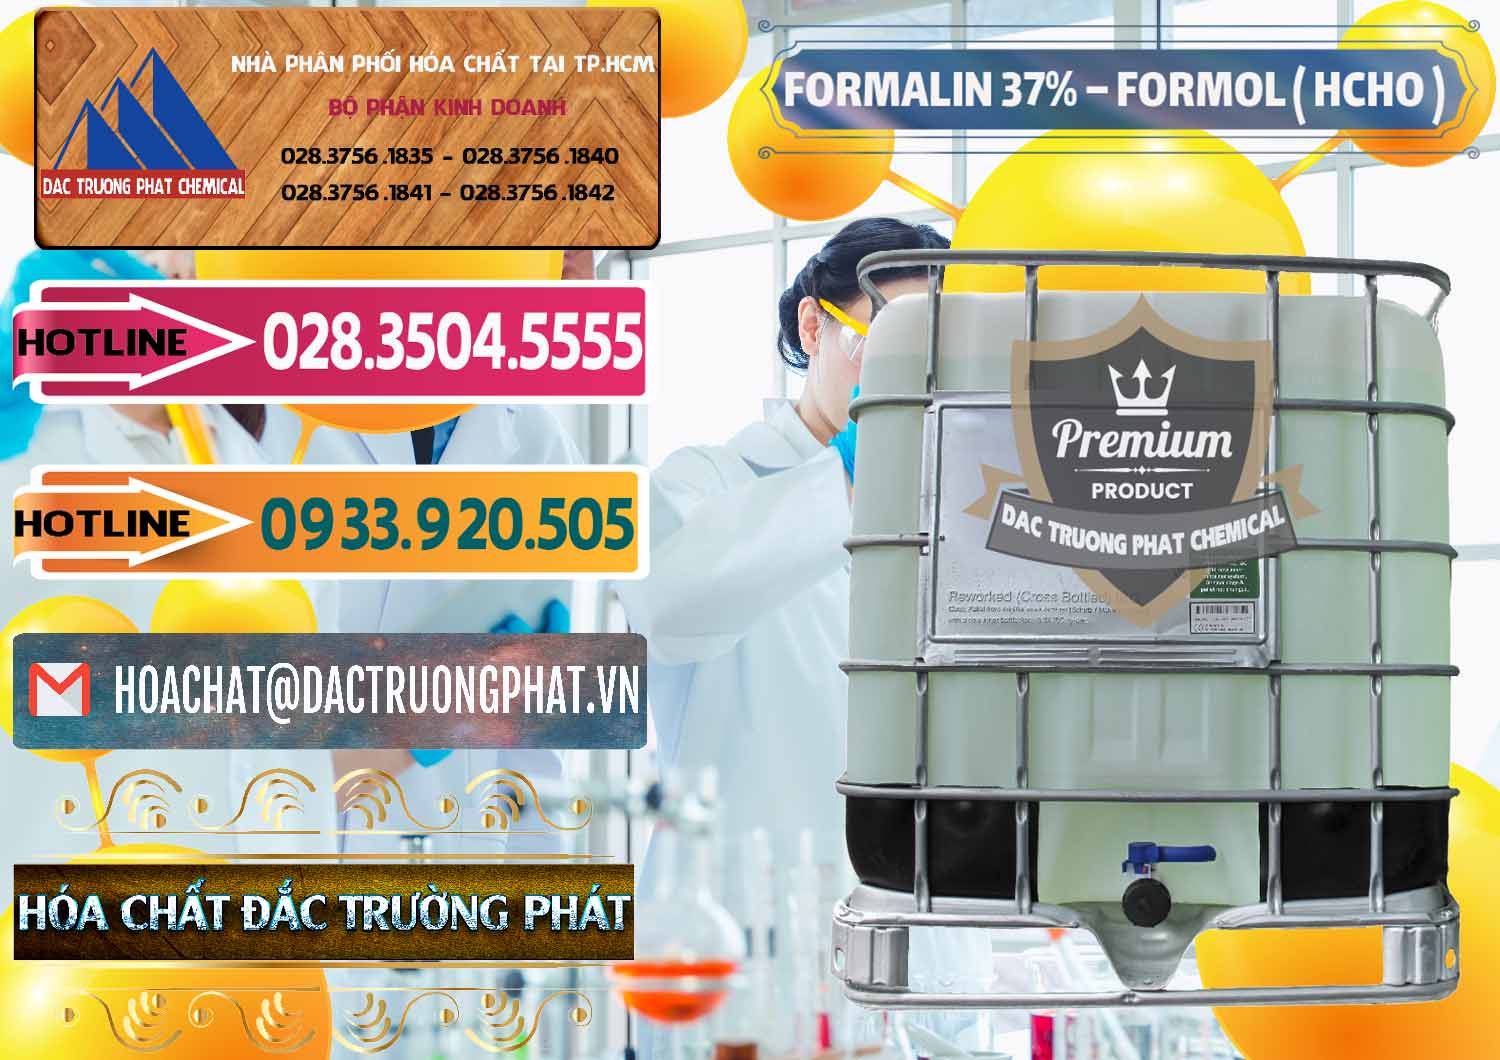 Cty cung cấp và bán Formalin - Formol ( HCHO ) 37% Việt Nam - 0187 - Công ty phân phối _ bán hóa chất tại TP.HCM - dactruongphat.vn